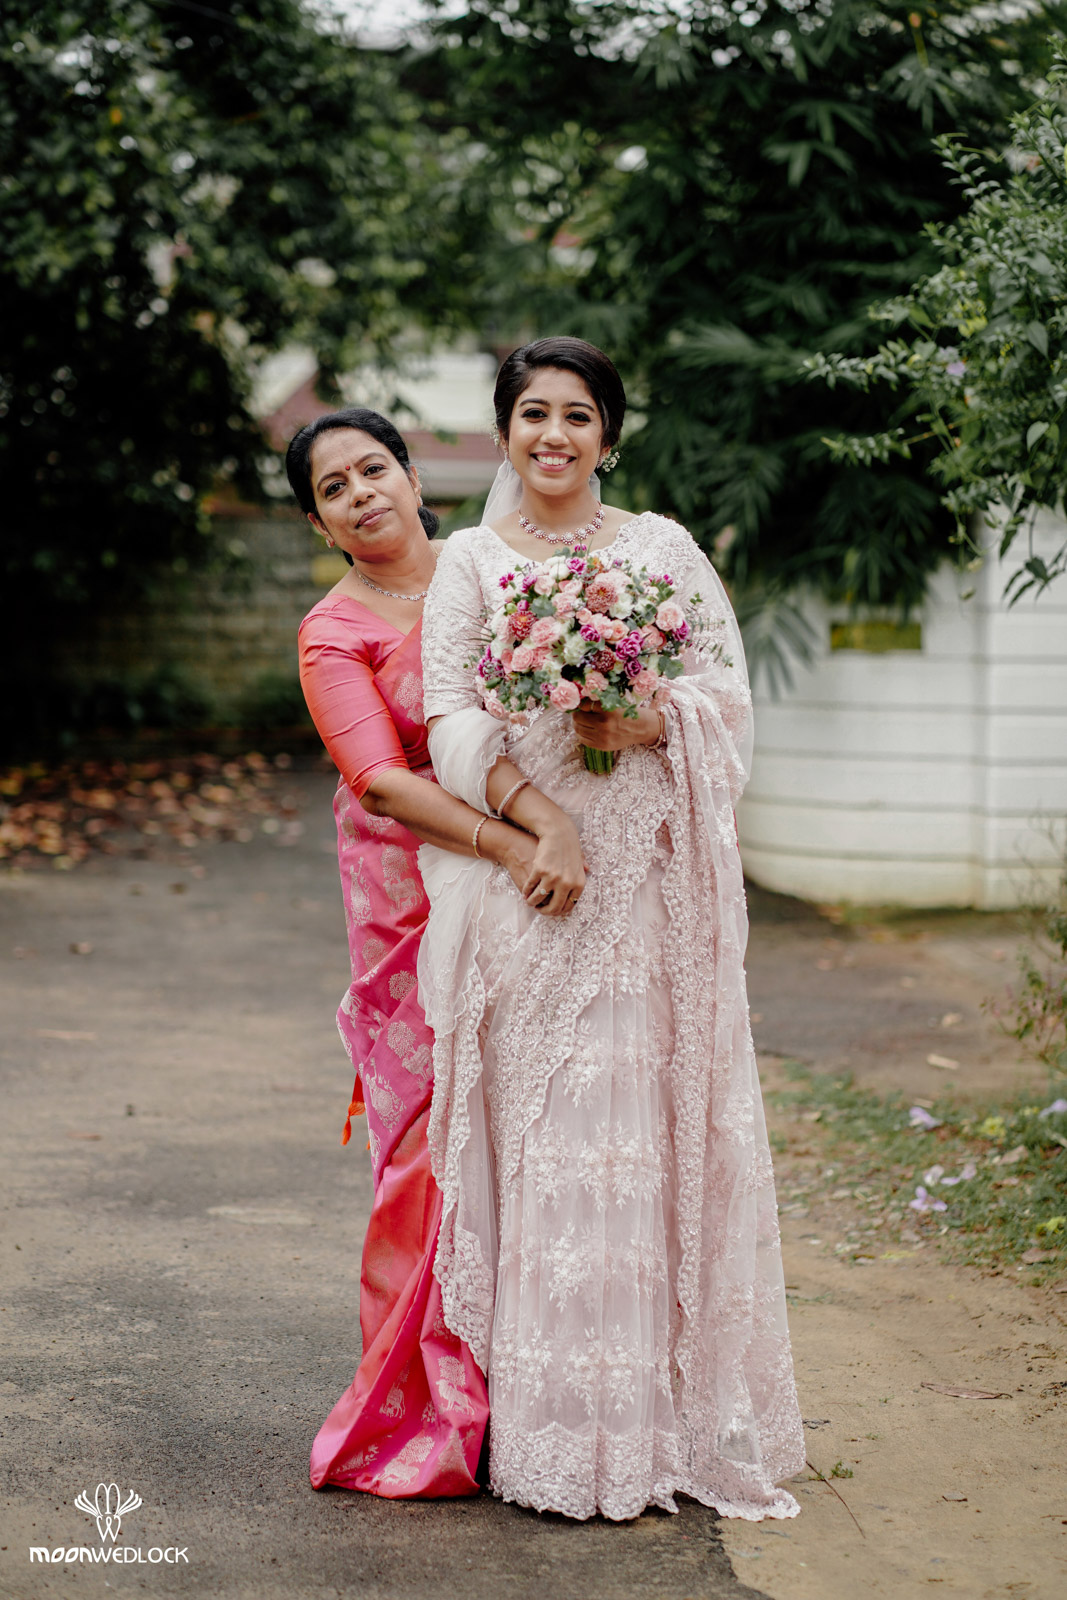 bangalore-christian-wedding-photography-moonwedlock (7)